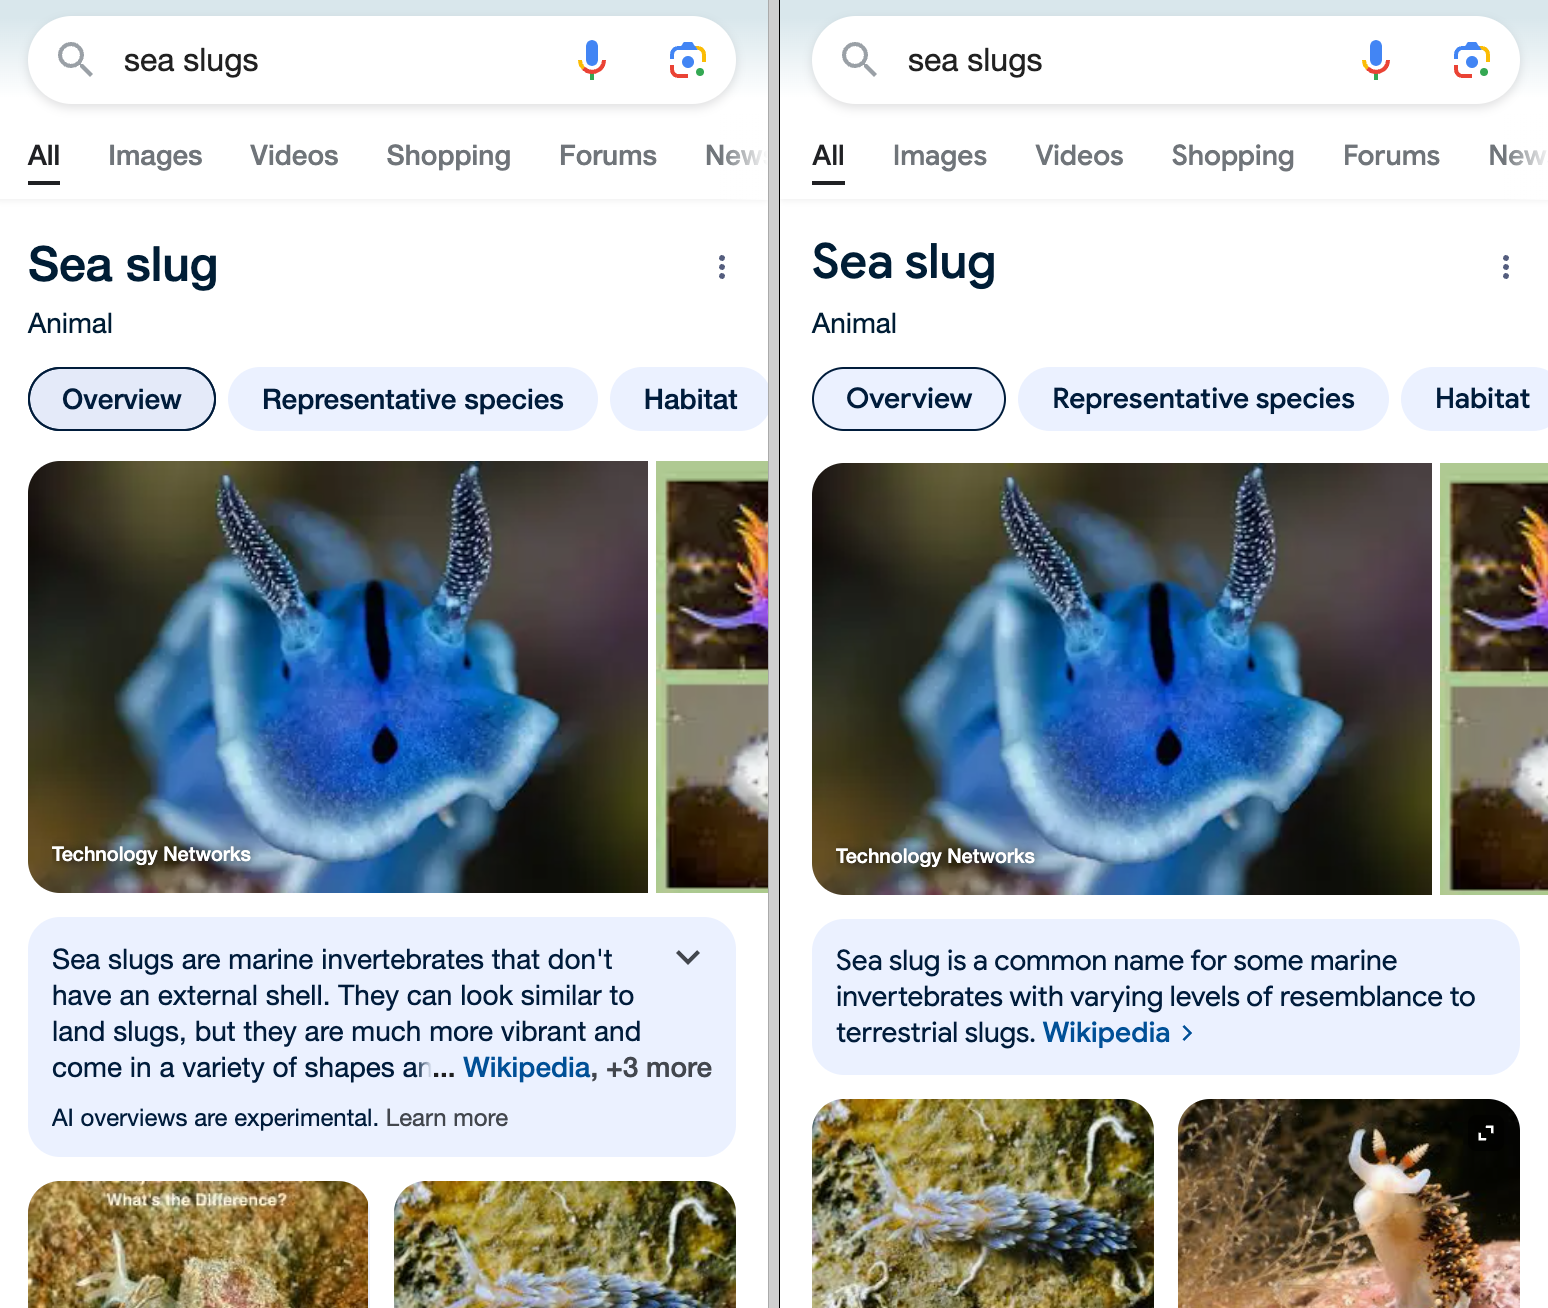 Comparaison des résultats de Google pour "sea slug" avant et après l'intégration de l'IA.